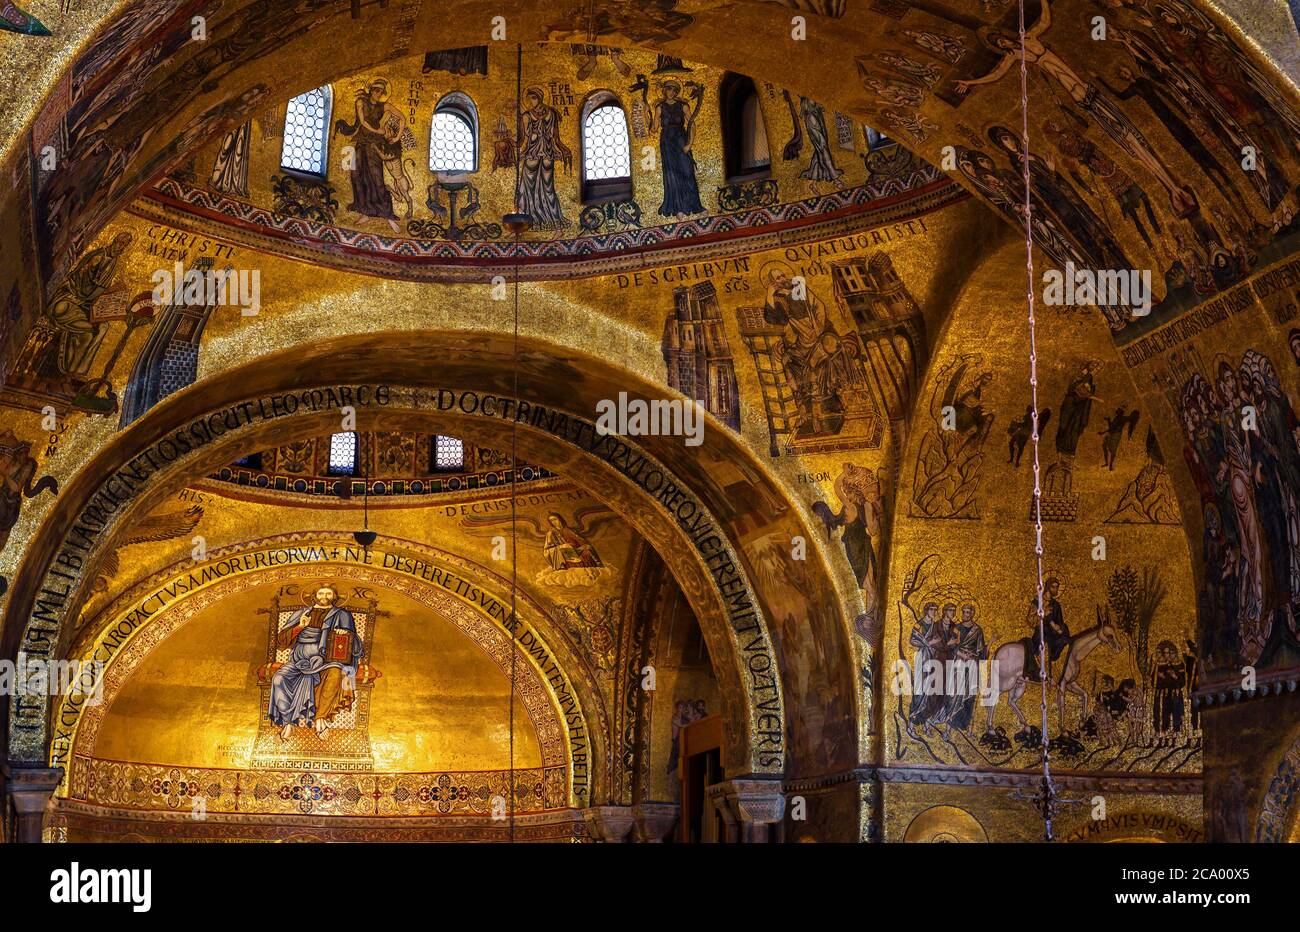 Venezia, Italia - 21 maggio 2017: Mosaico murale d'oro all'interno della Basilica di San Marco`s o San Marco a Venezia. E' il punto di riferimento di Venezia. Vecchio interno di famou Foto Stock